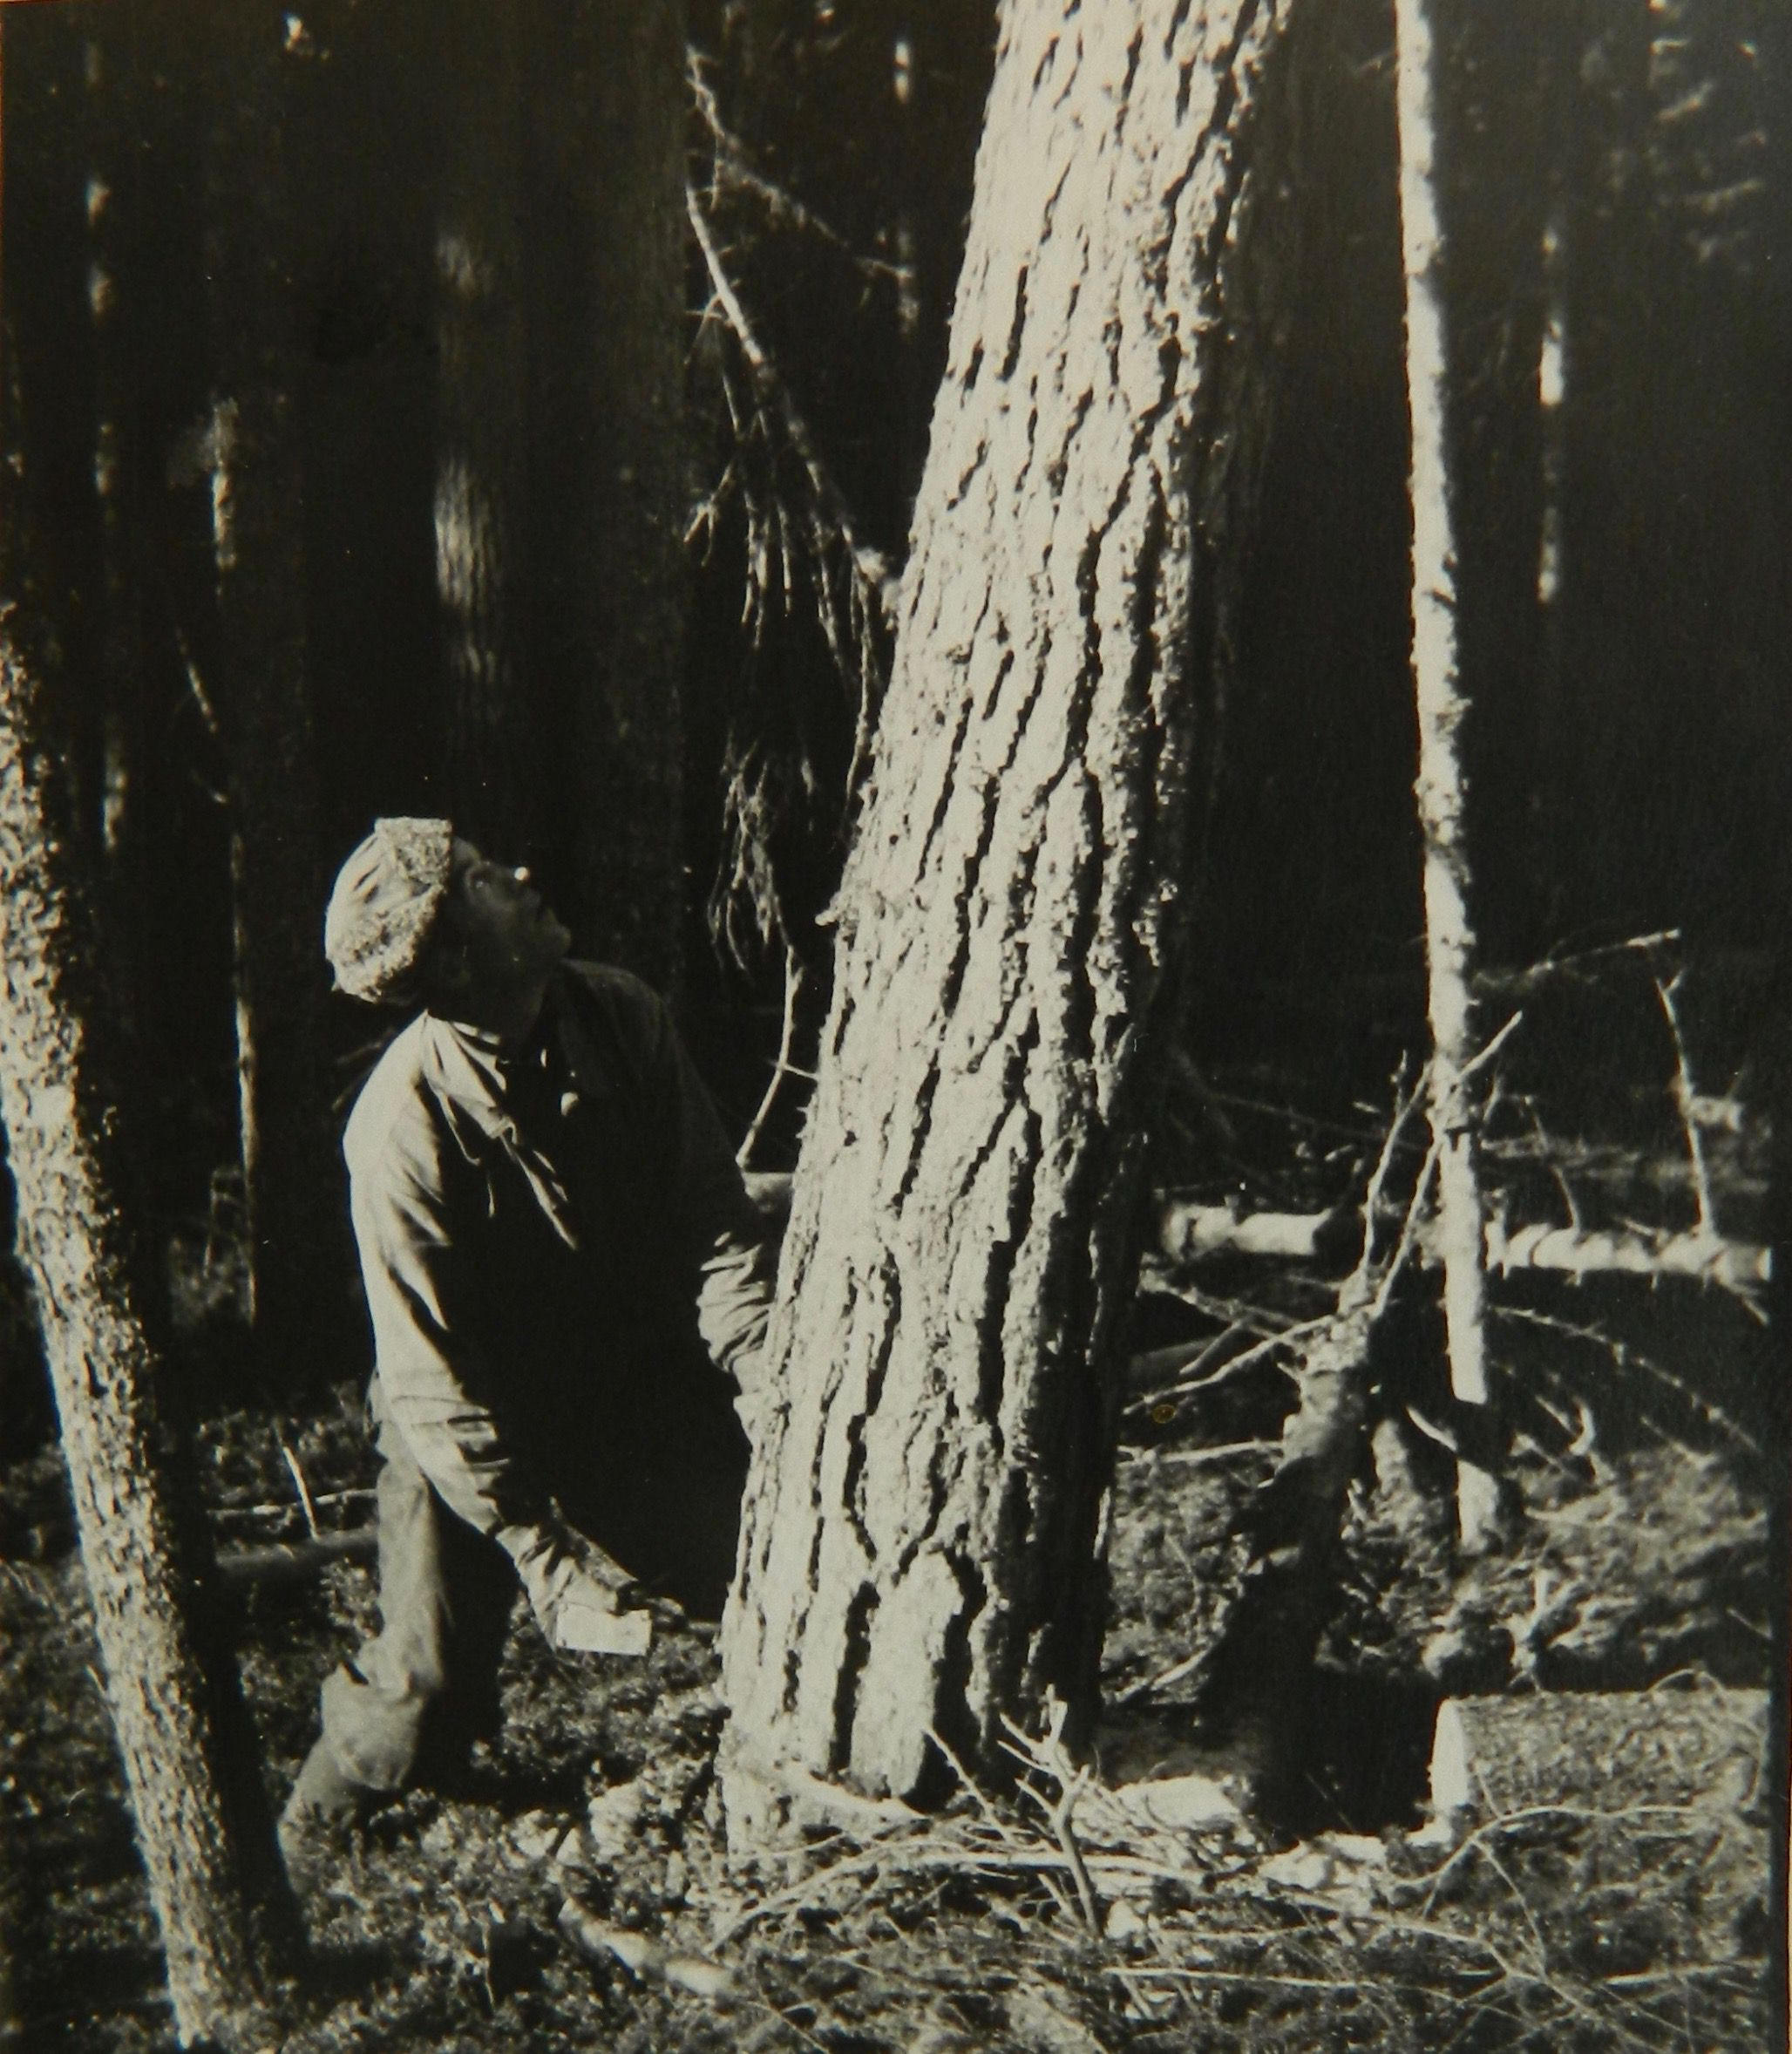 Onni Eskolin oli yksi monista toisen maailmansodan aikana Tšeljabinskiin työarmeijaan joutuneista suomalaisista. Kuva Eskolinista puunkaadossa on otettu jo hänen vapautumisensa jälkeen 1950-luvulla. SKS KRA, Rinne-perheen arkisto. CC BY-NC-ND 4.0